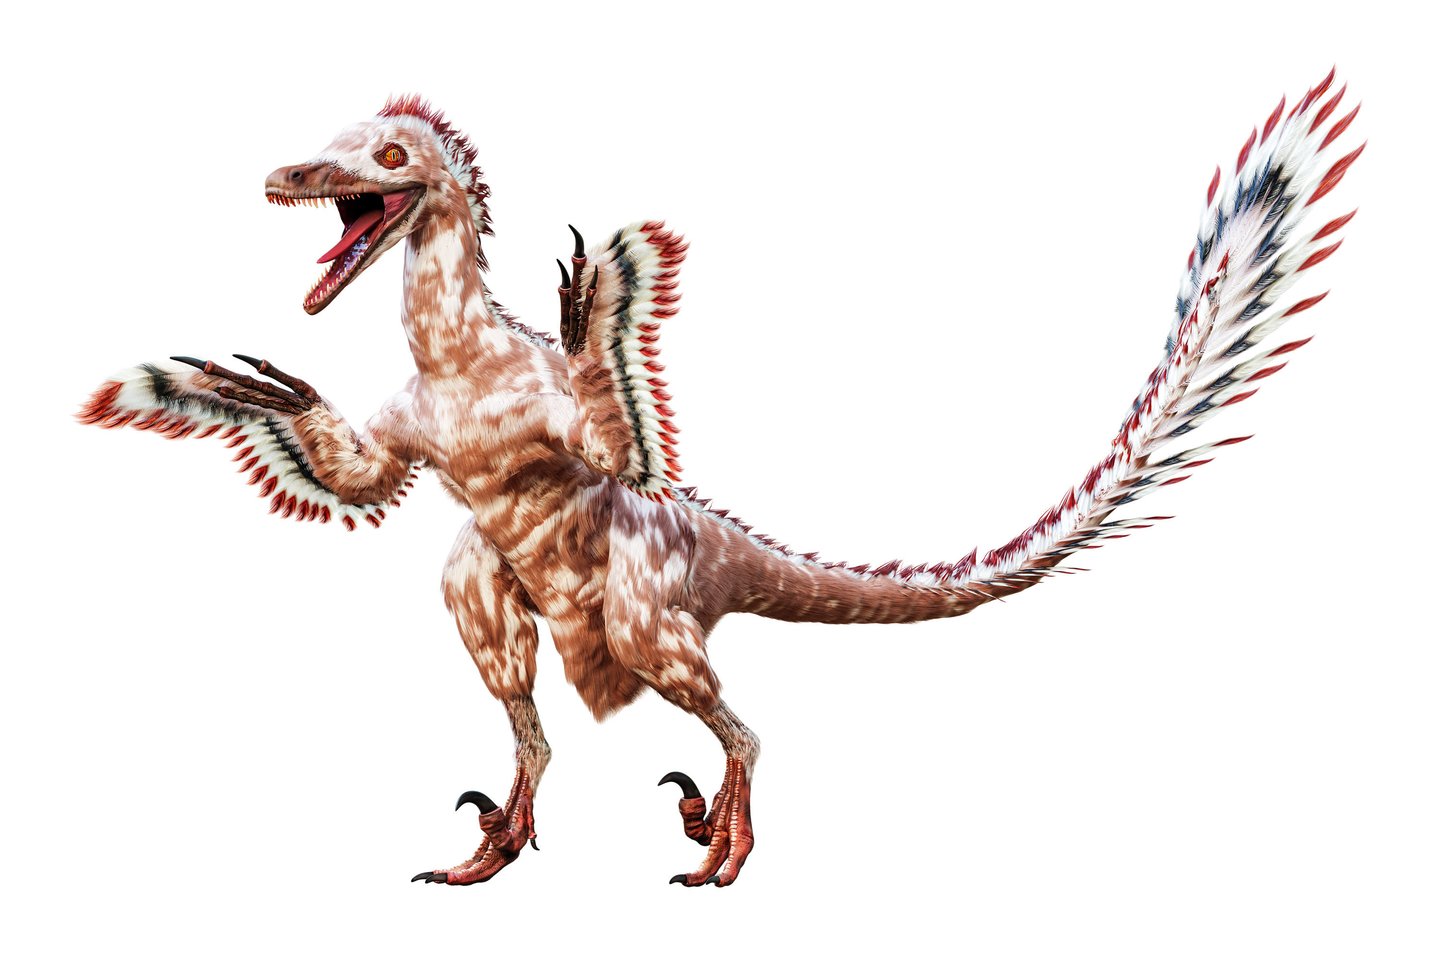 Daugeliui tai turbūt neįprastas vaizdas, bet būtent taip ar labai panašiai atrodė tikrieji Velociraptor mongoliensis – garsieji velociraptoriai iš filmo „Juros periodo parko“.<br> 123rf nuotr.